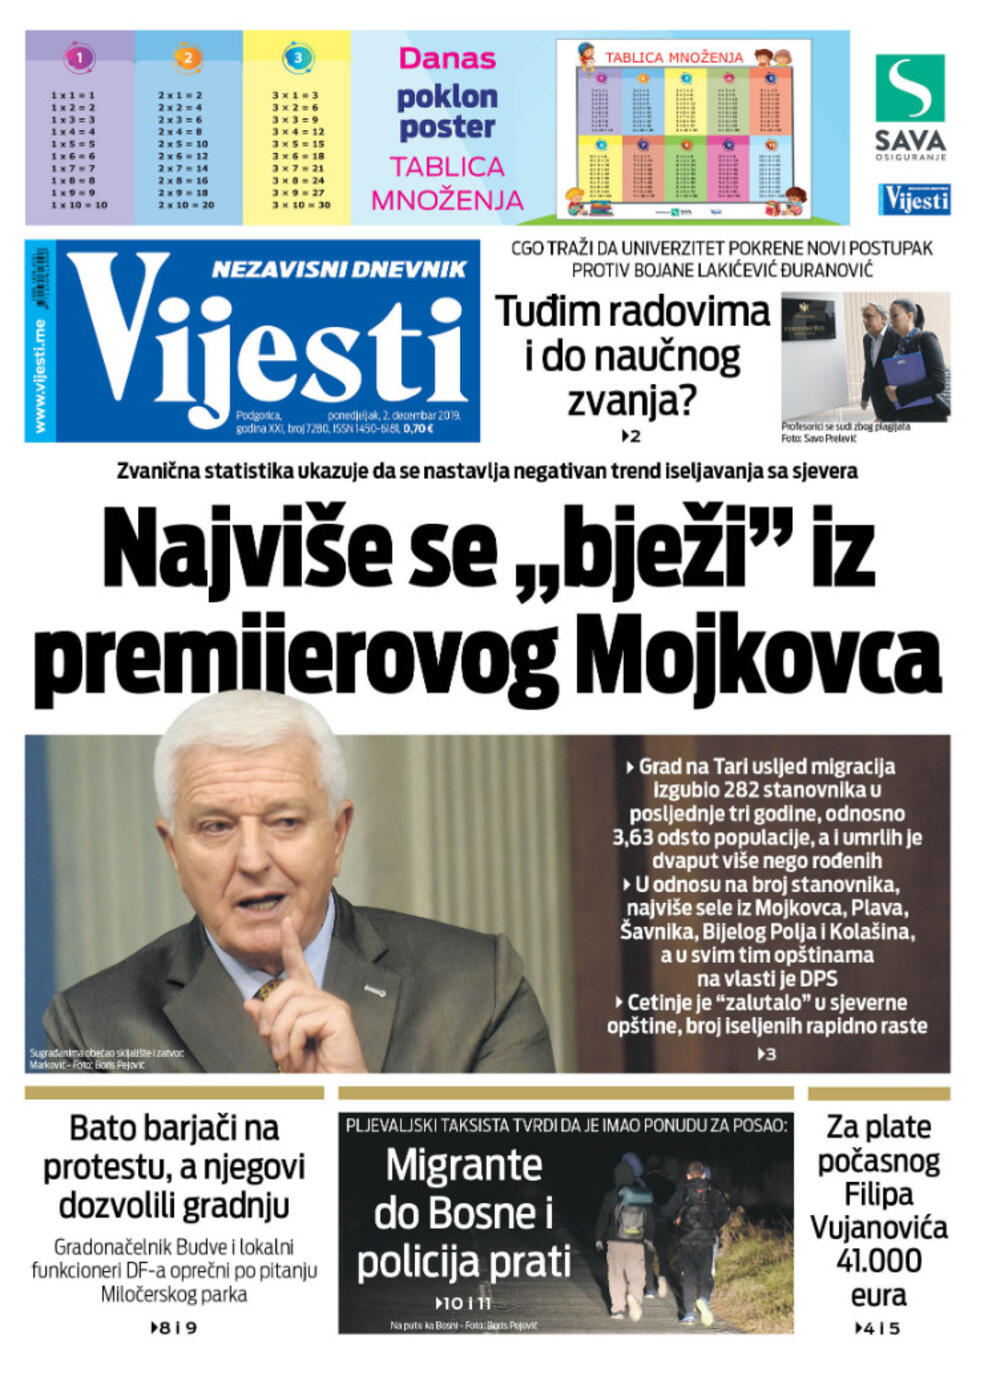 Naslovna strana "Vijesti" za 2. decembar 2019.